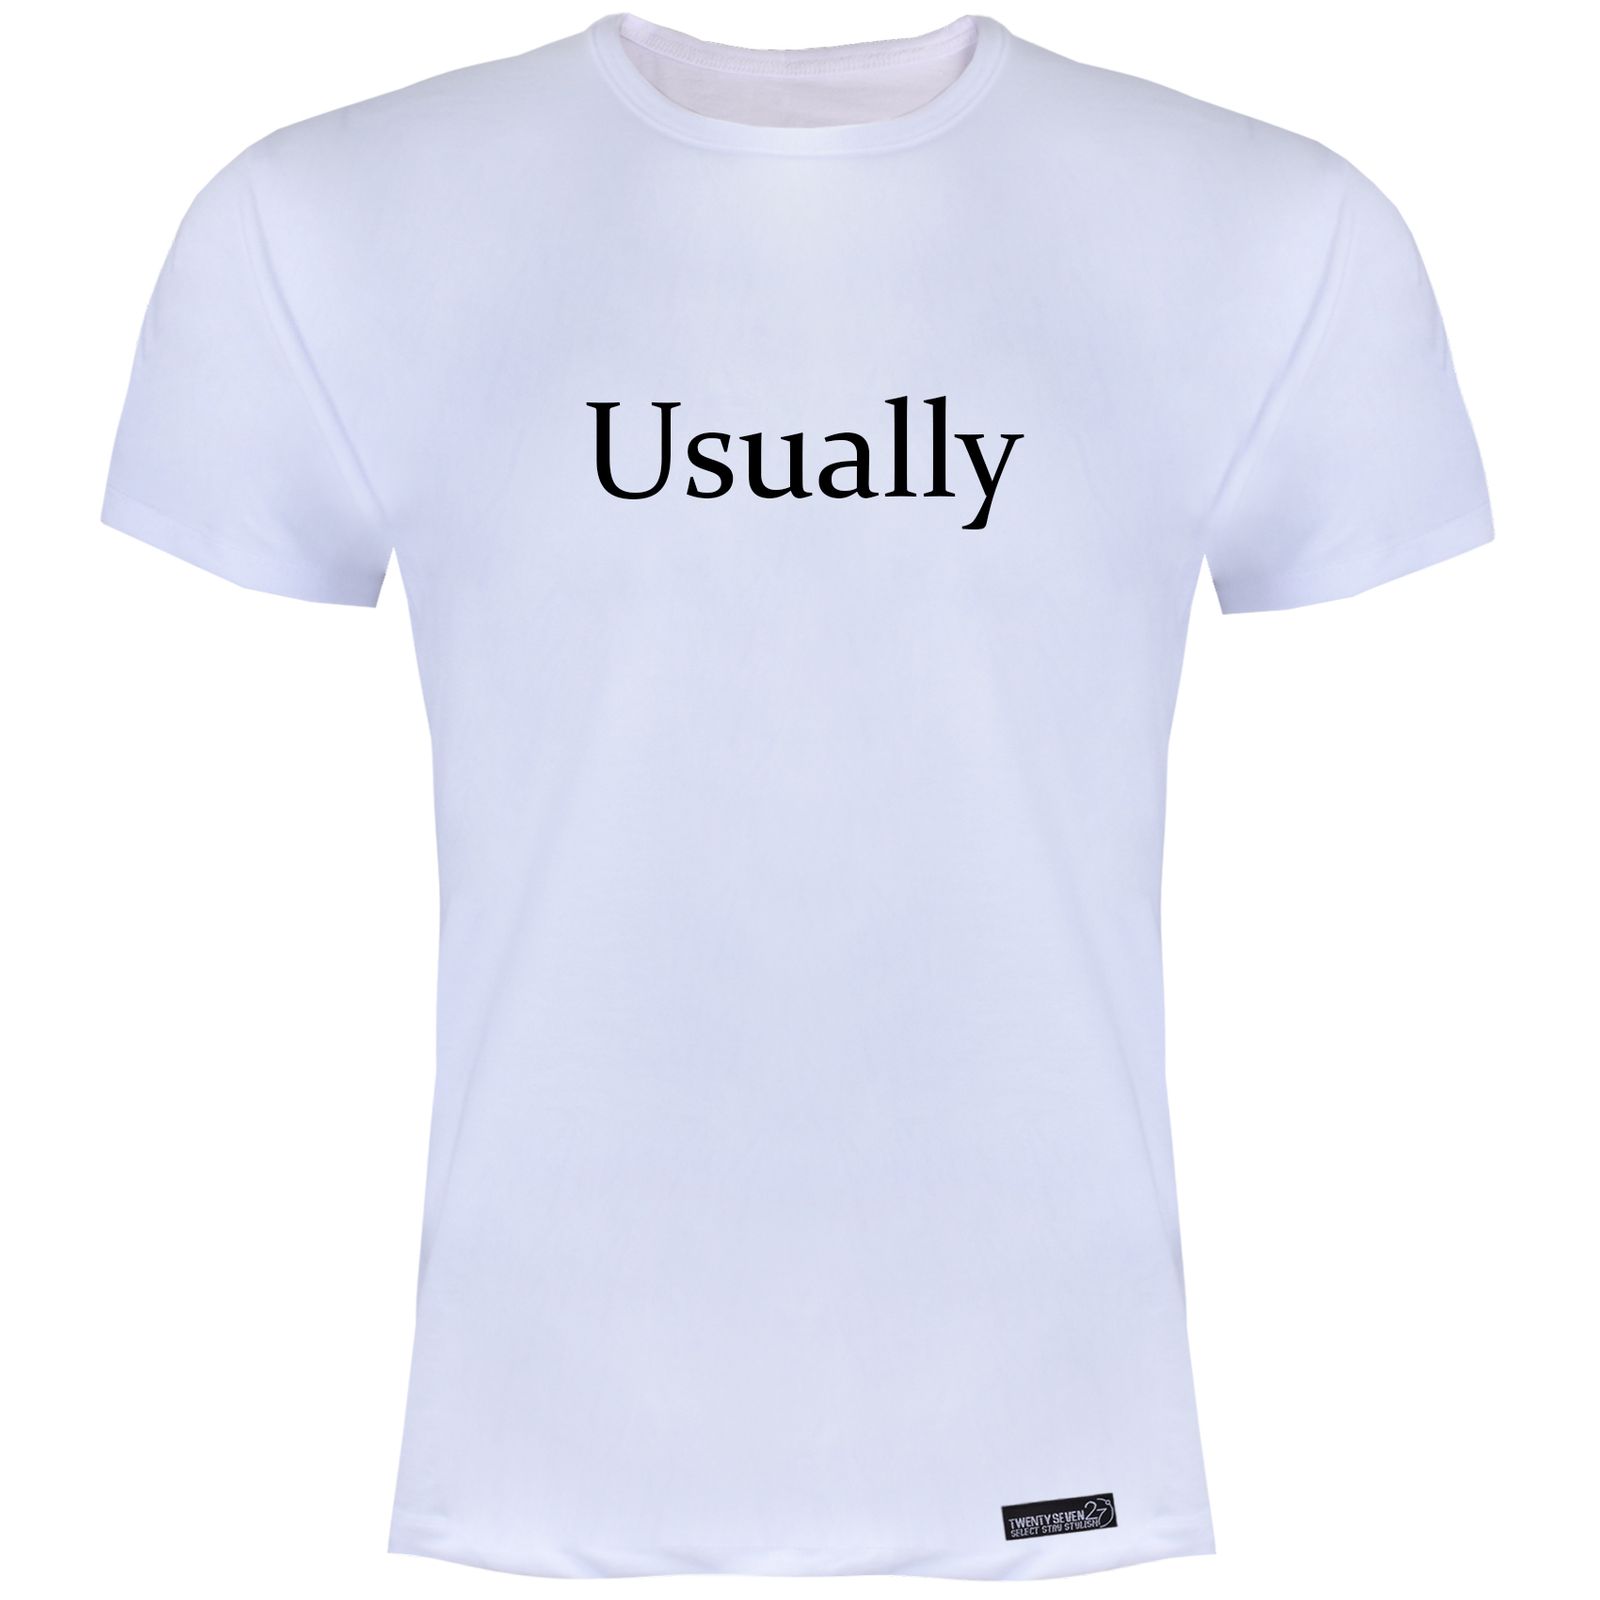 تی شرت آستین کوتاه مردانه 27 مدل Usually کد KV101 رنگ سفید -  - 2